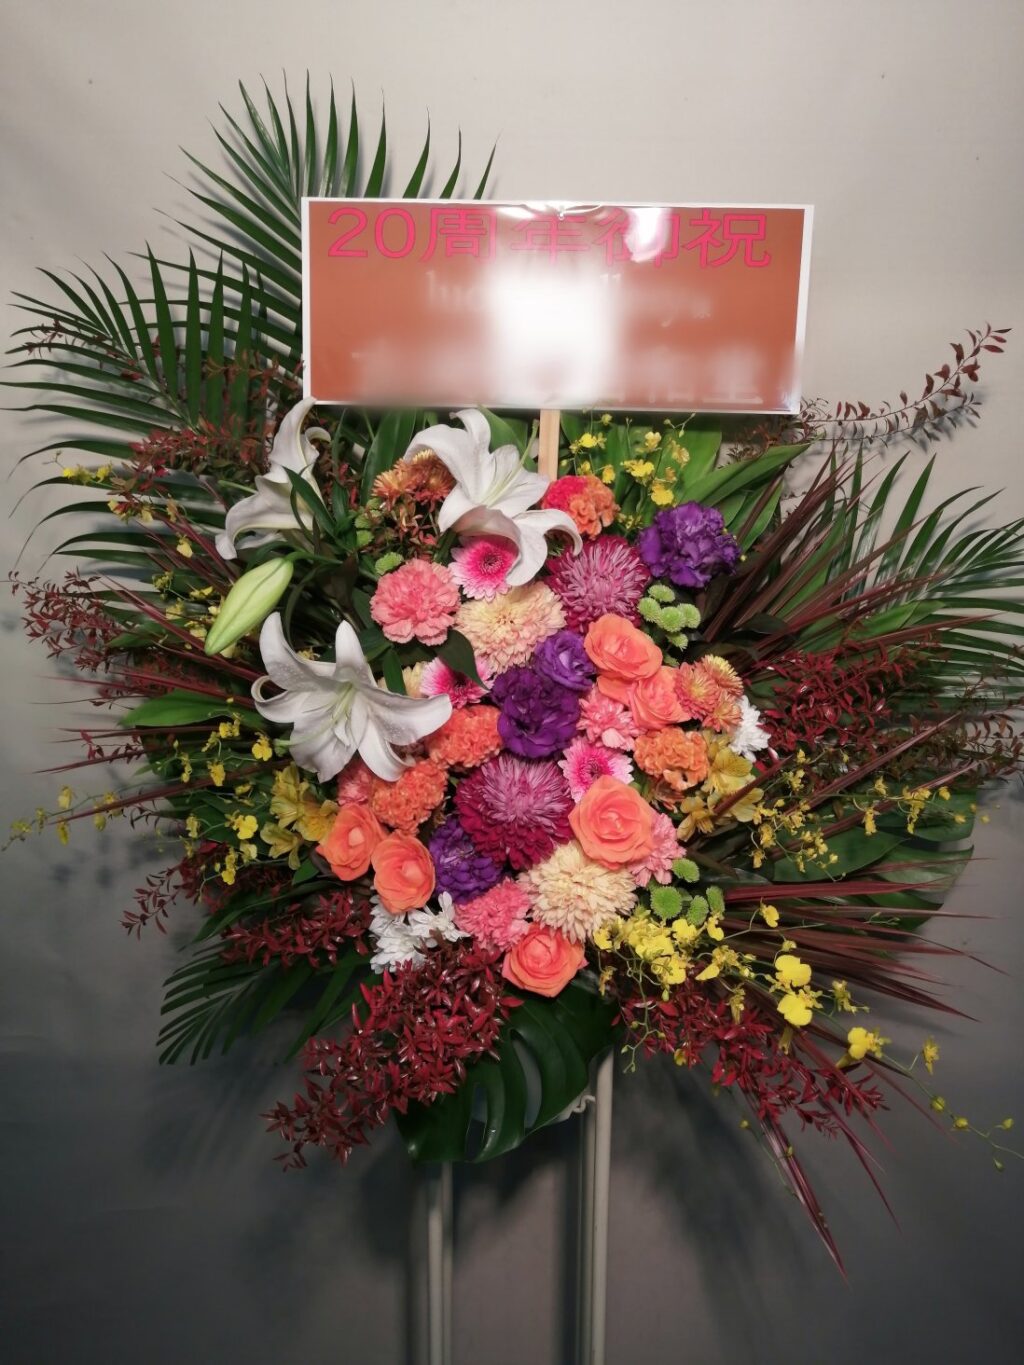 台東区にお届けした20周年御祝いのスタンド花